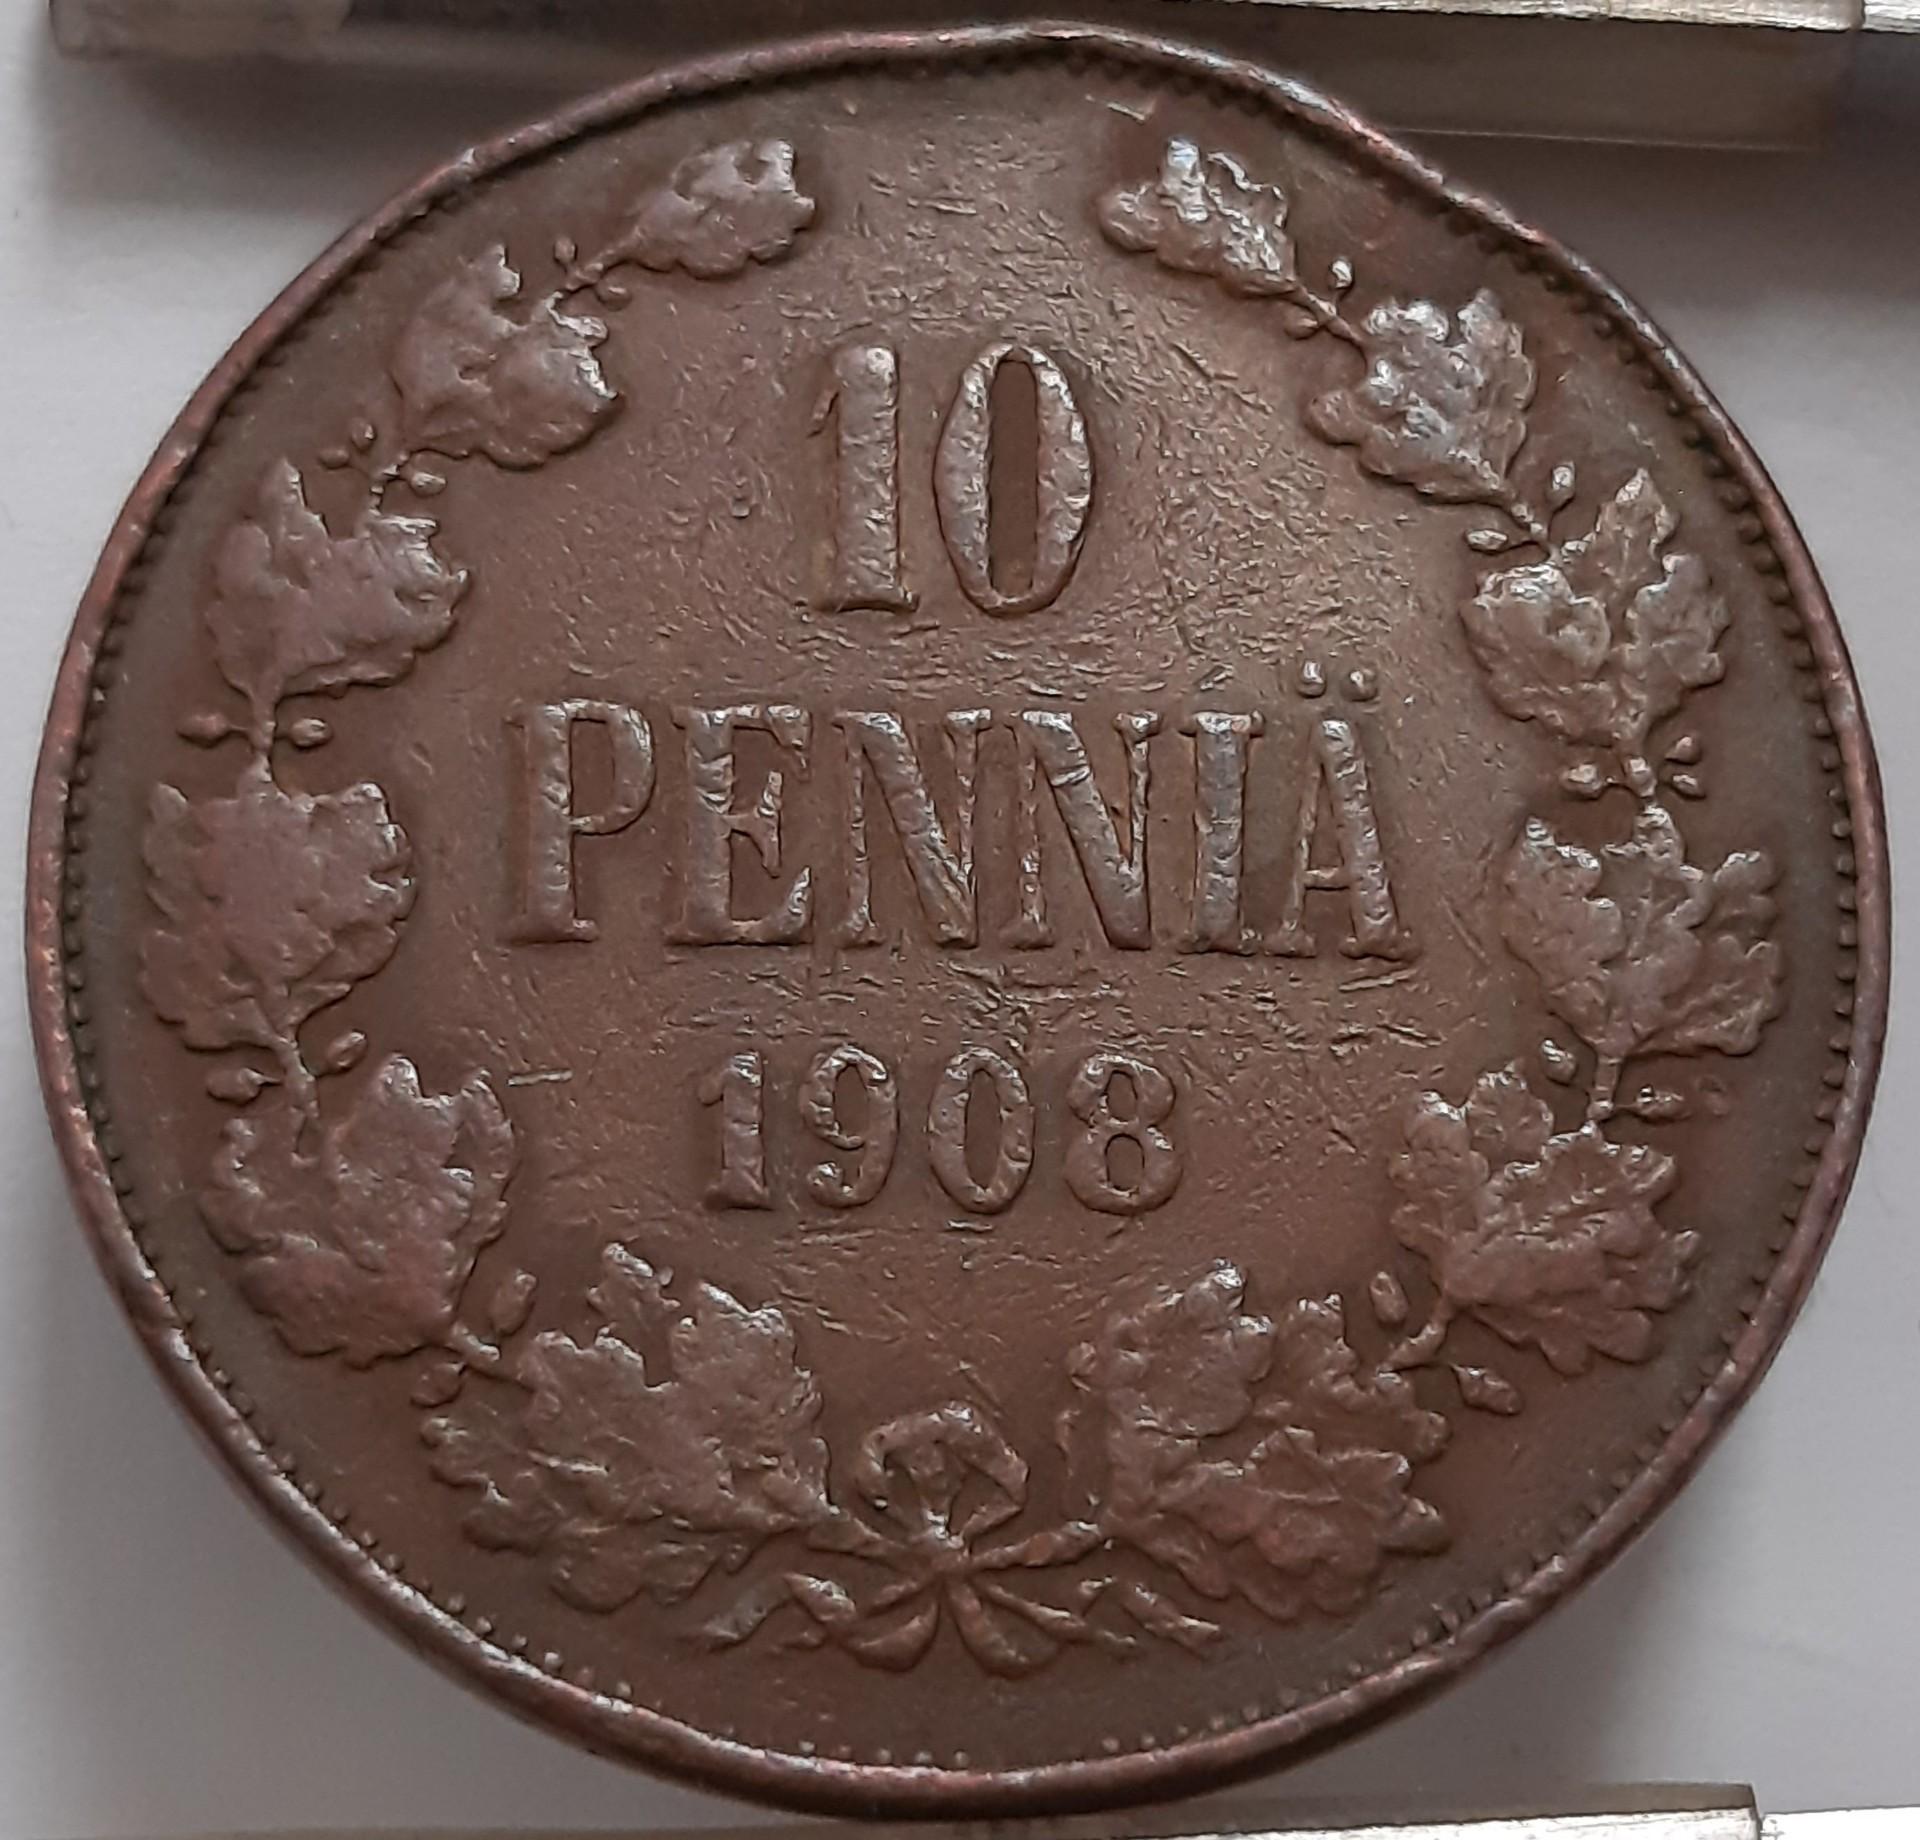 Suomija 10 Pensų 1908 KM#14 Varis (4214)